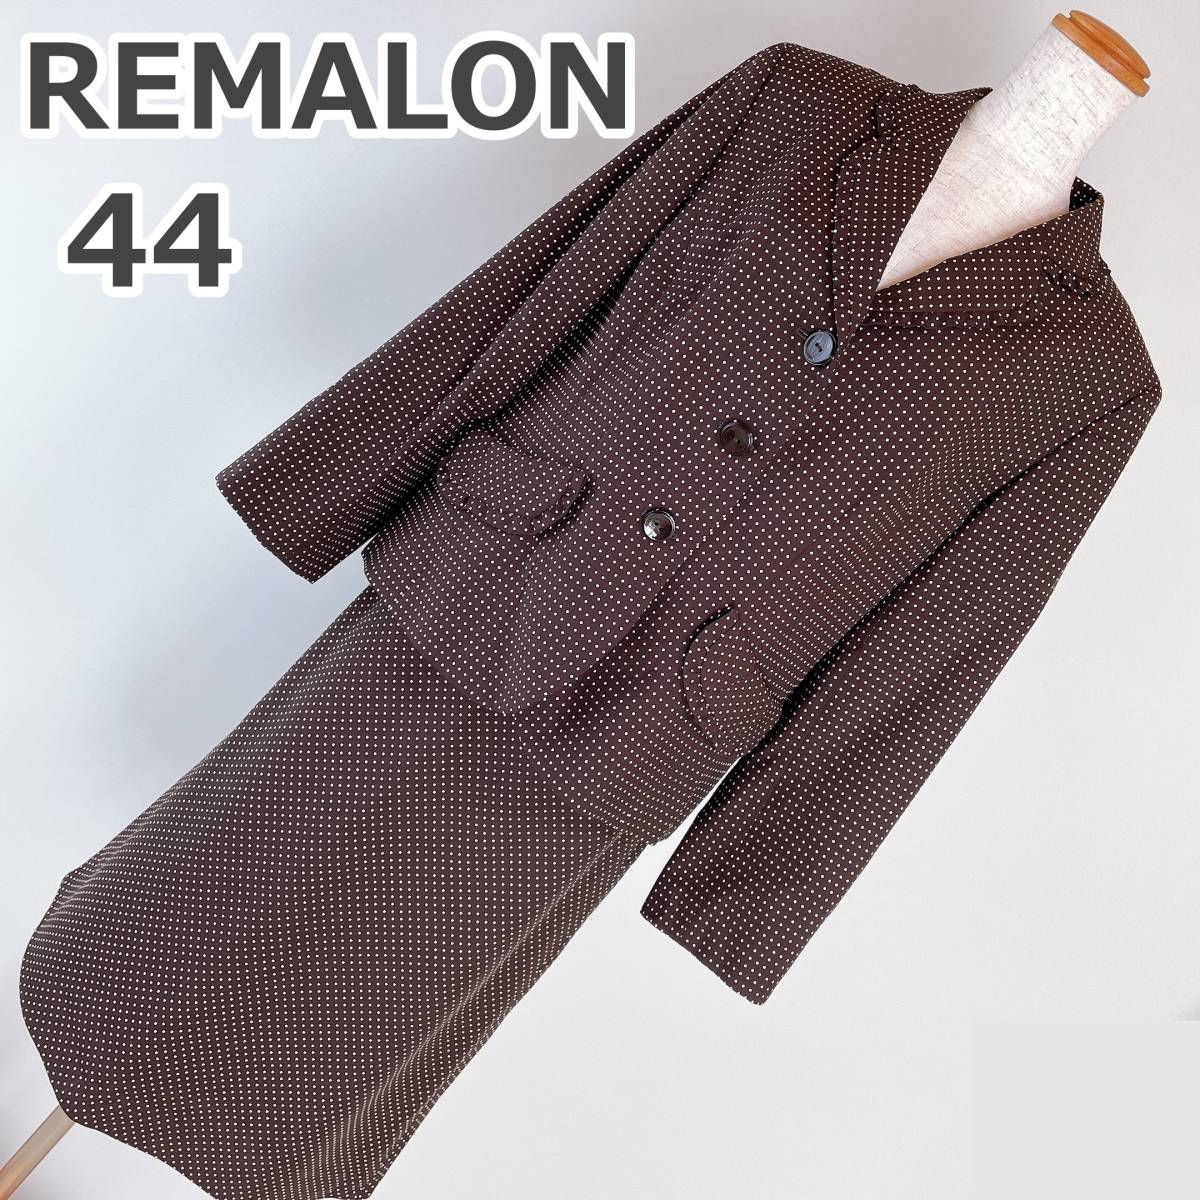 サイズ44 大きいサイズ REMALON ダークブラウン スーツ 上下セット 大きいサイズ 大きめサイズ 15号ぐらい テーラードジャケット スカート